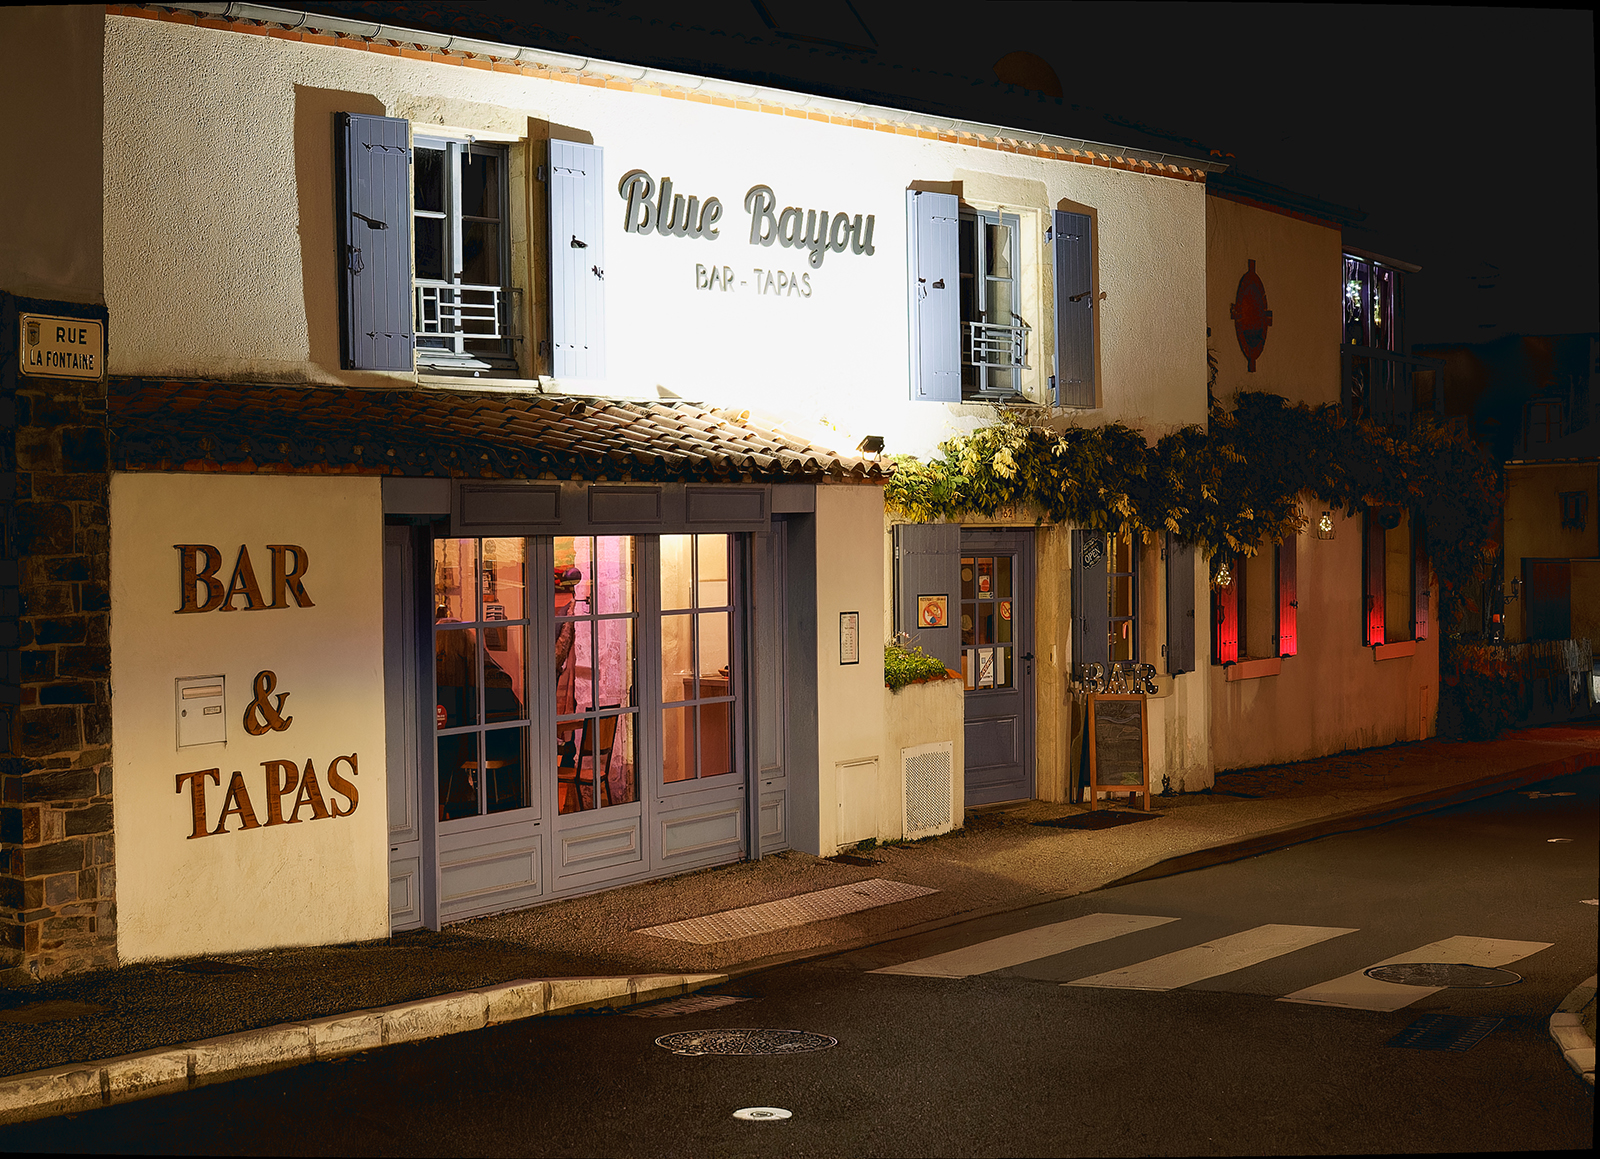 Blue Bayou - Bar tapas